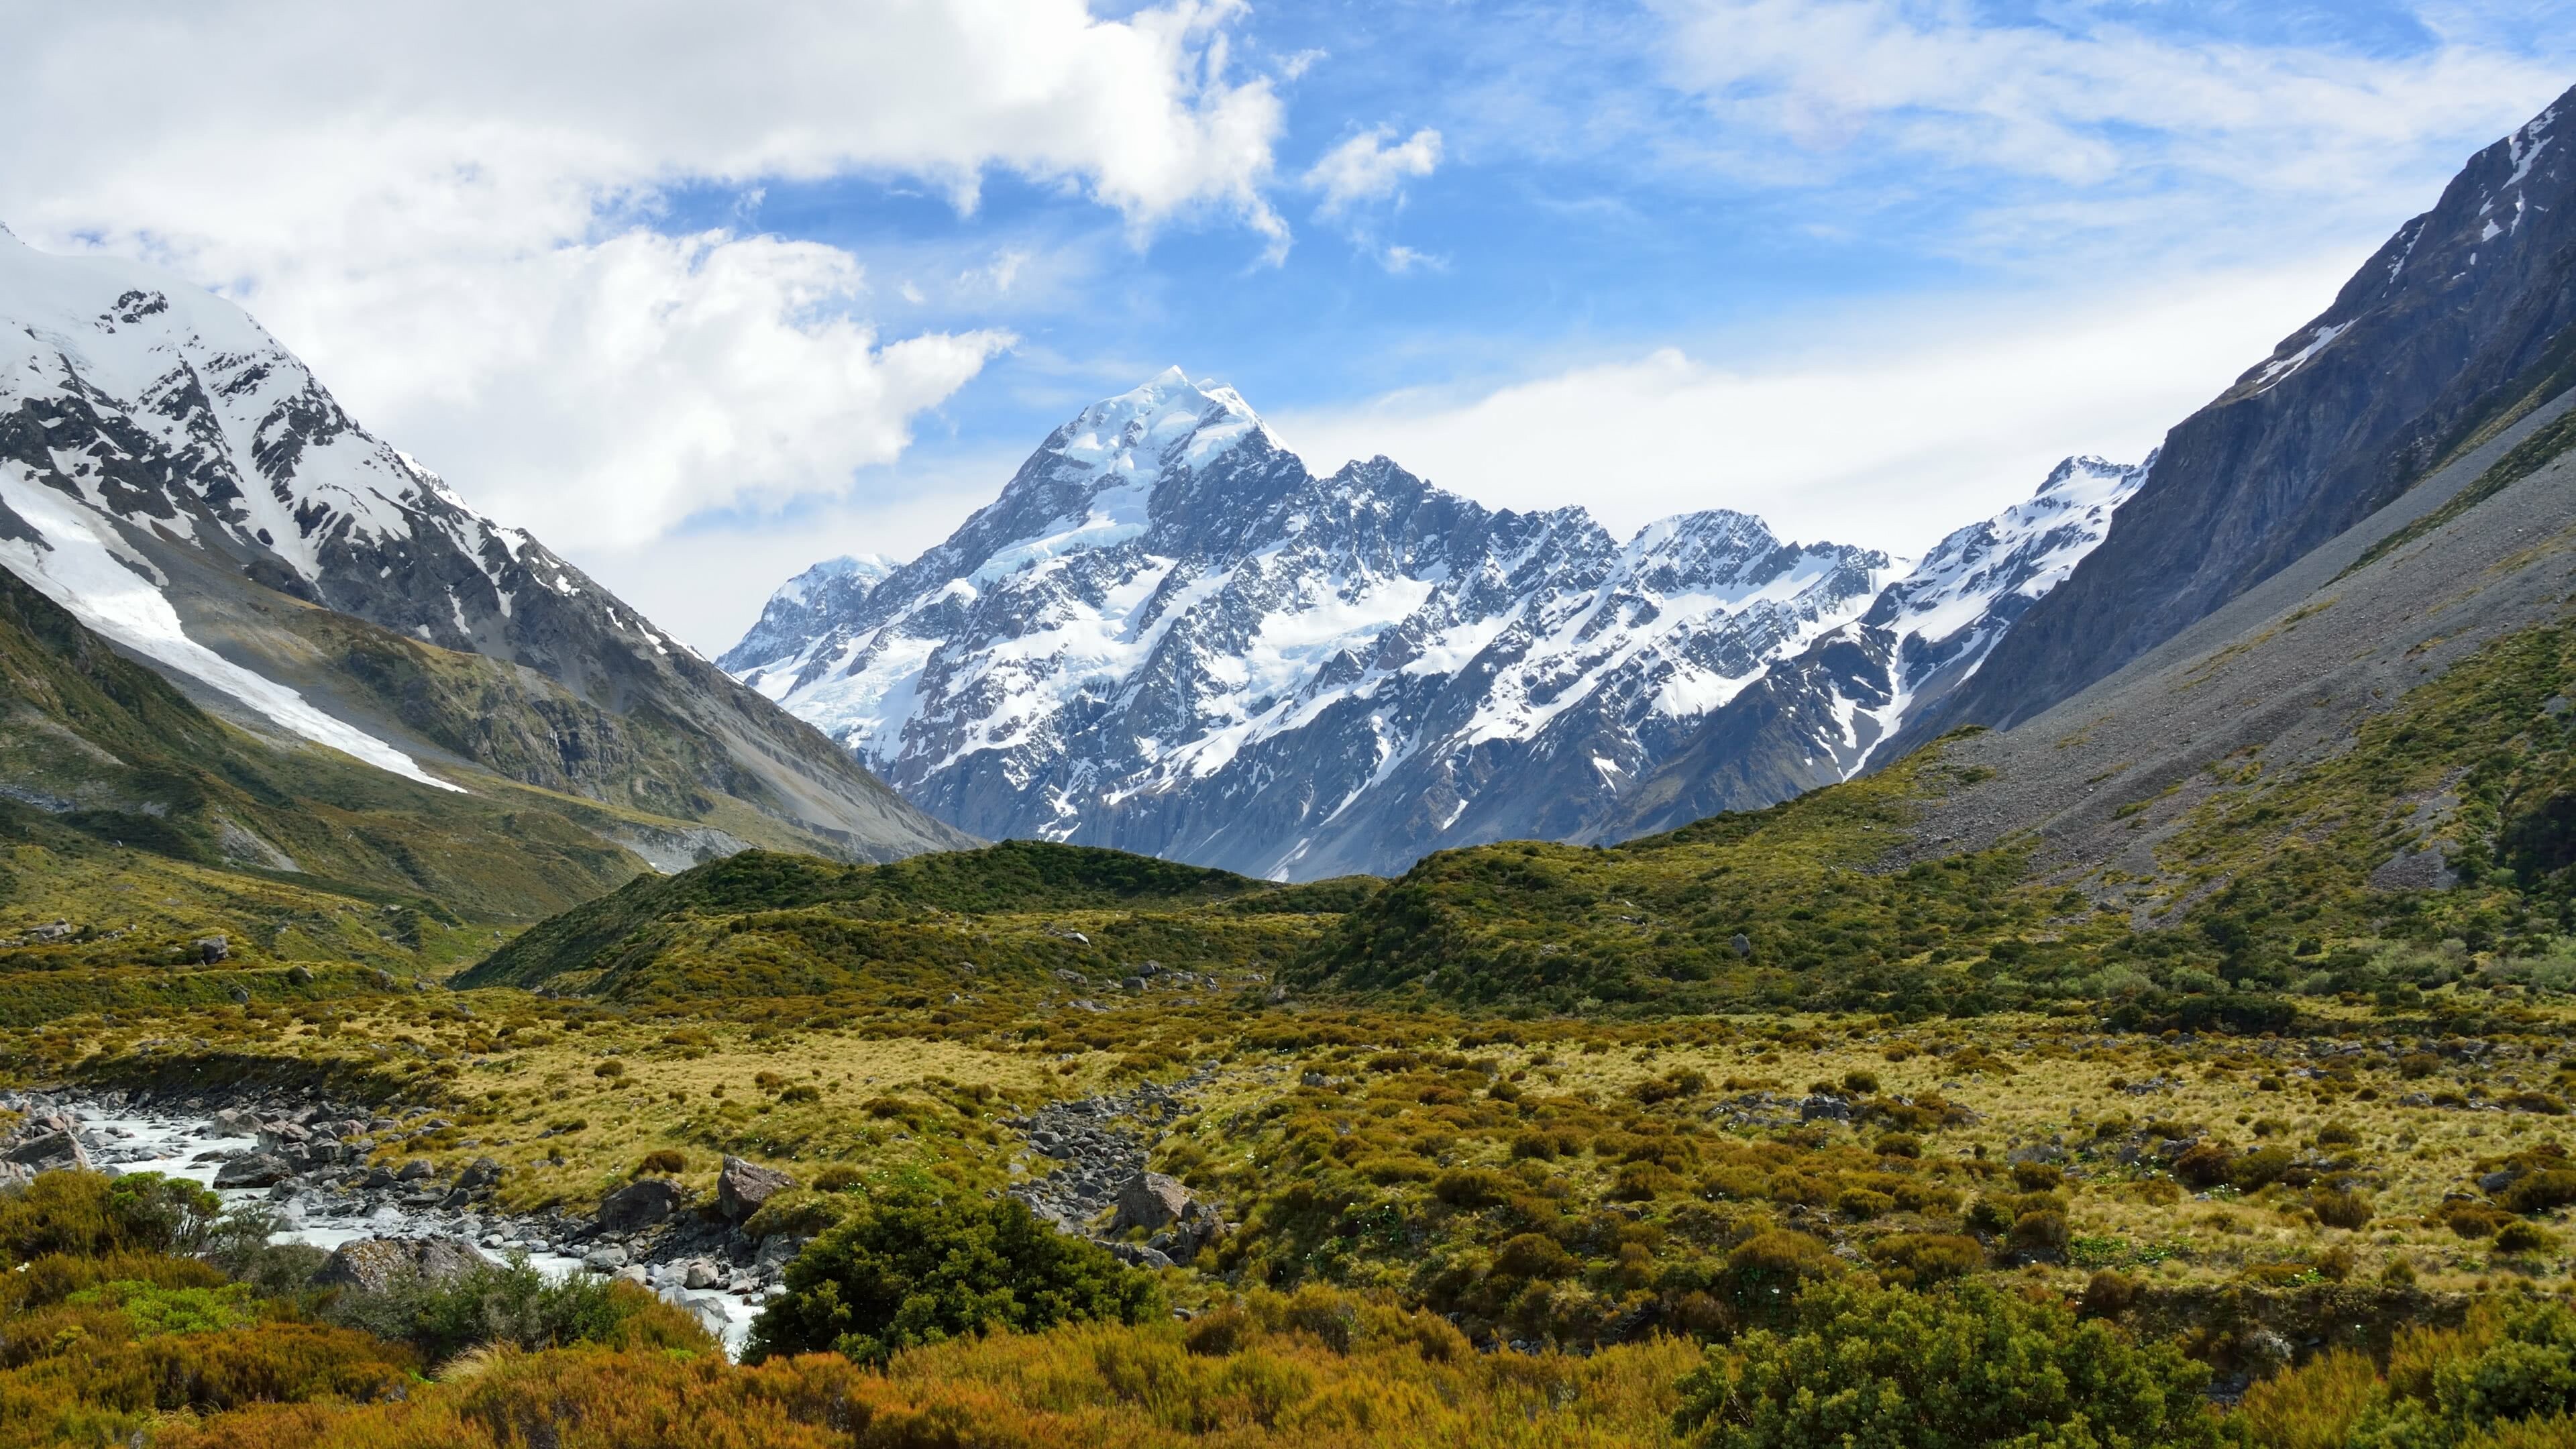 New Zealand: Hooker Glacier, Aoraki, Mount Cook, Mackenzie Region. 3840x2160 4K Wallpaper.